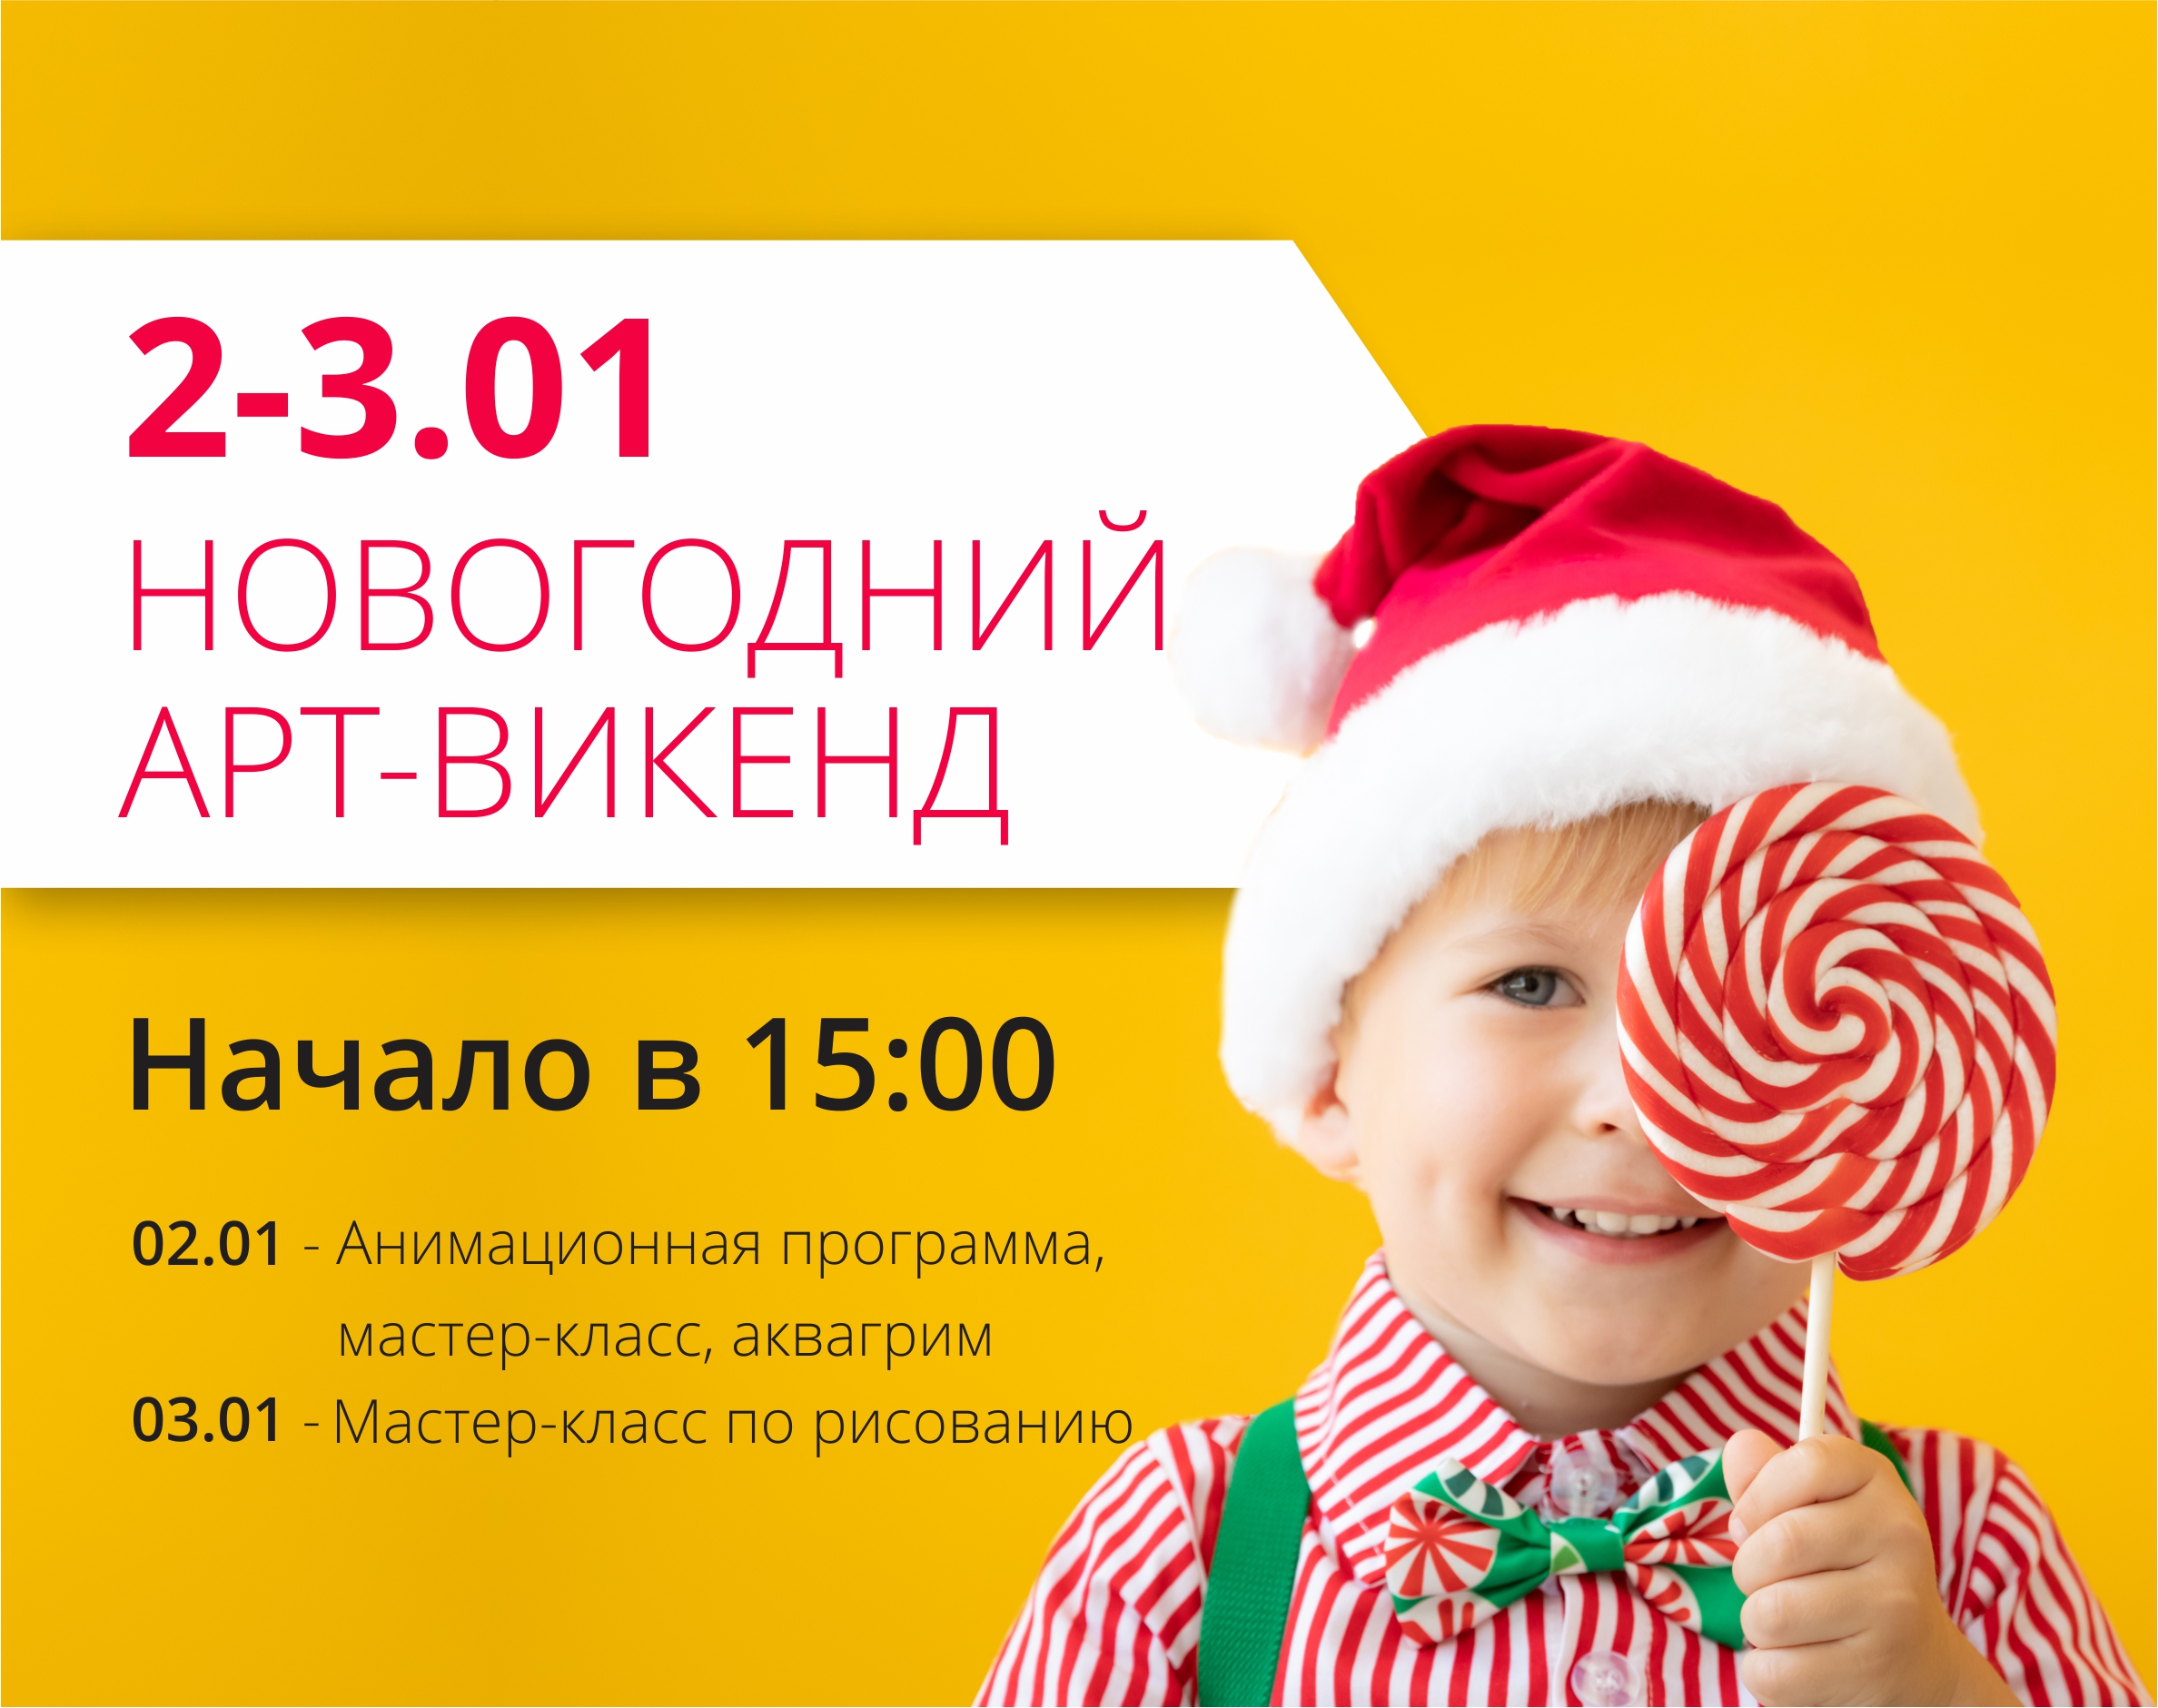 Встречаем новый год вместе с ТРЦ Любава!